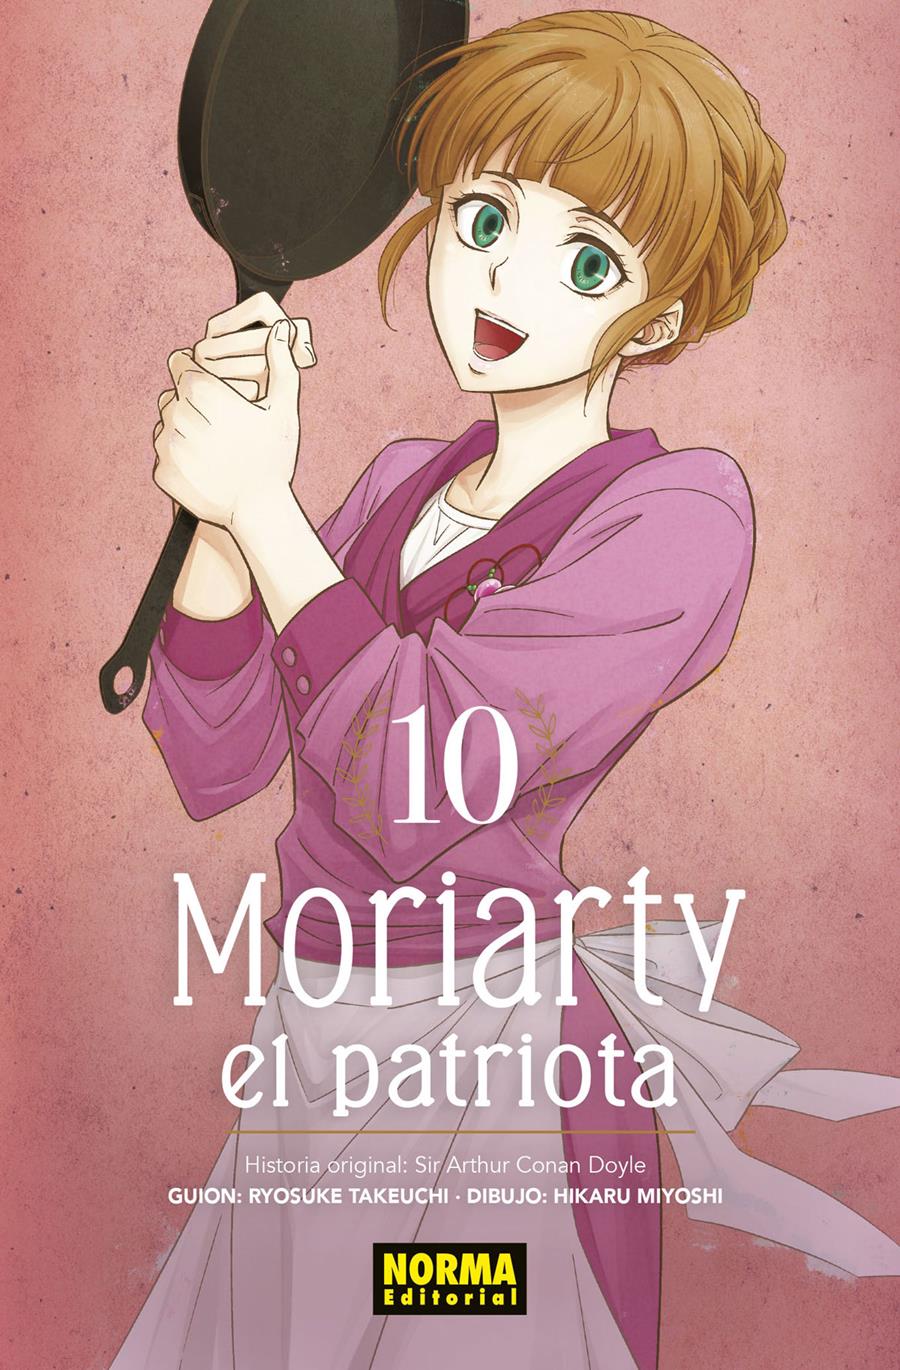 Moriarty el Patriota 10 | N0822-NOR10 | Ryosuke Takeuchi, Hikaru Miyoshi | Terra de Còmic - Tu tienda de cómics online especializada en cómics, manga y merchandising